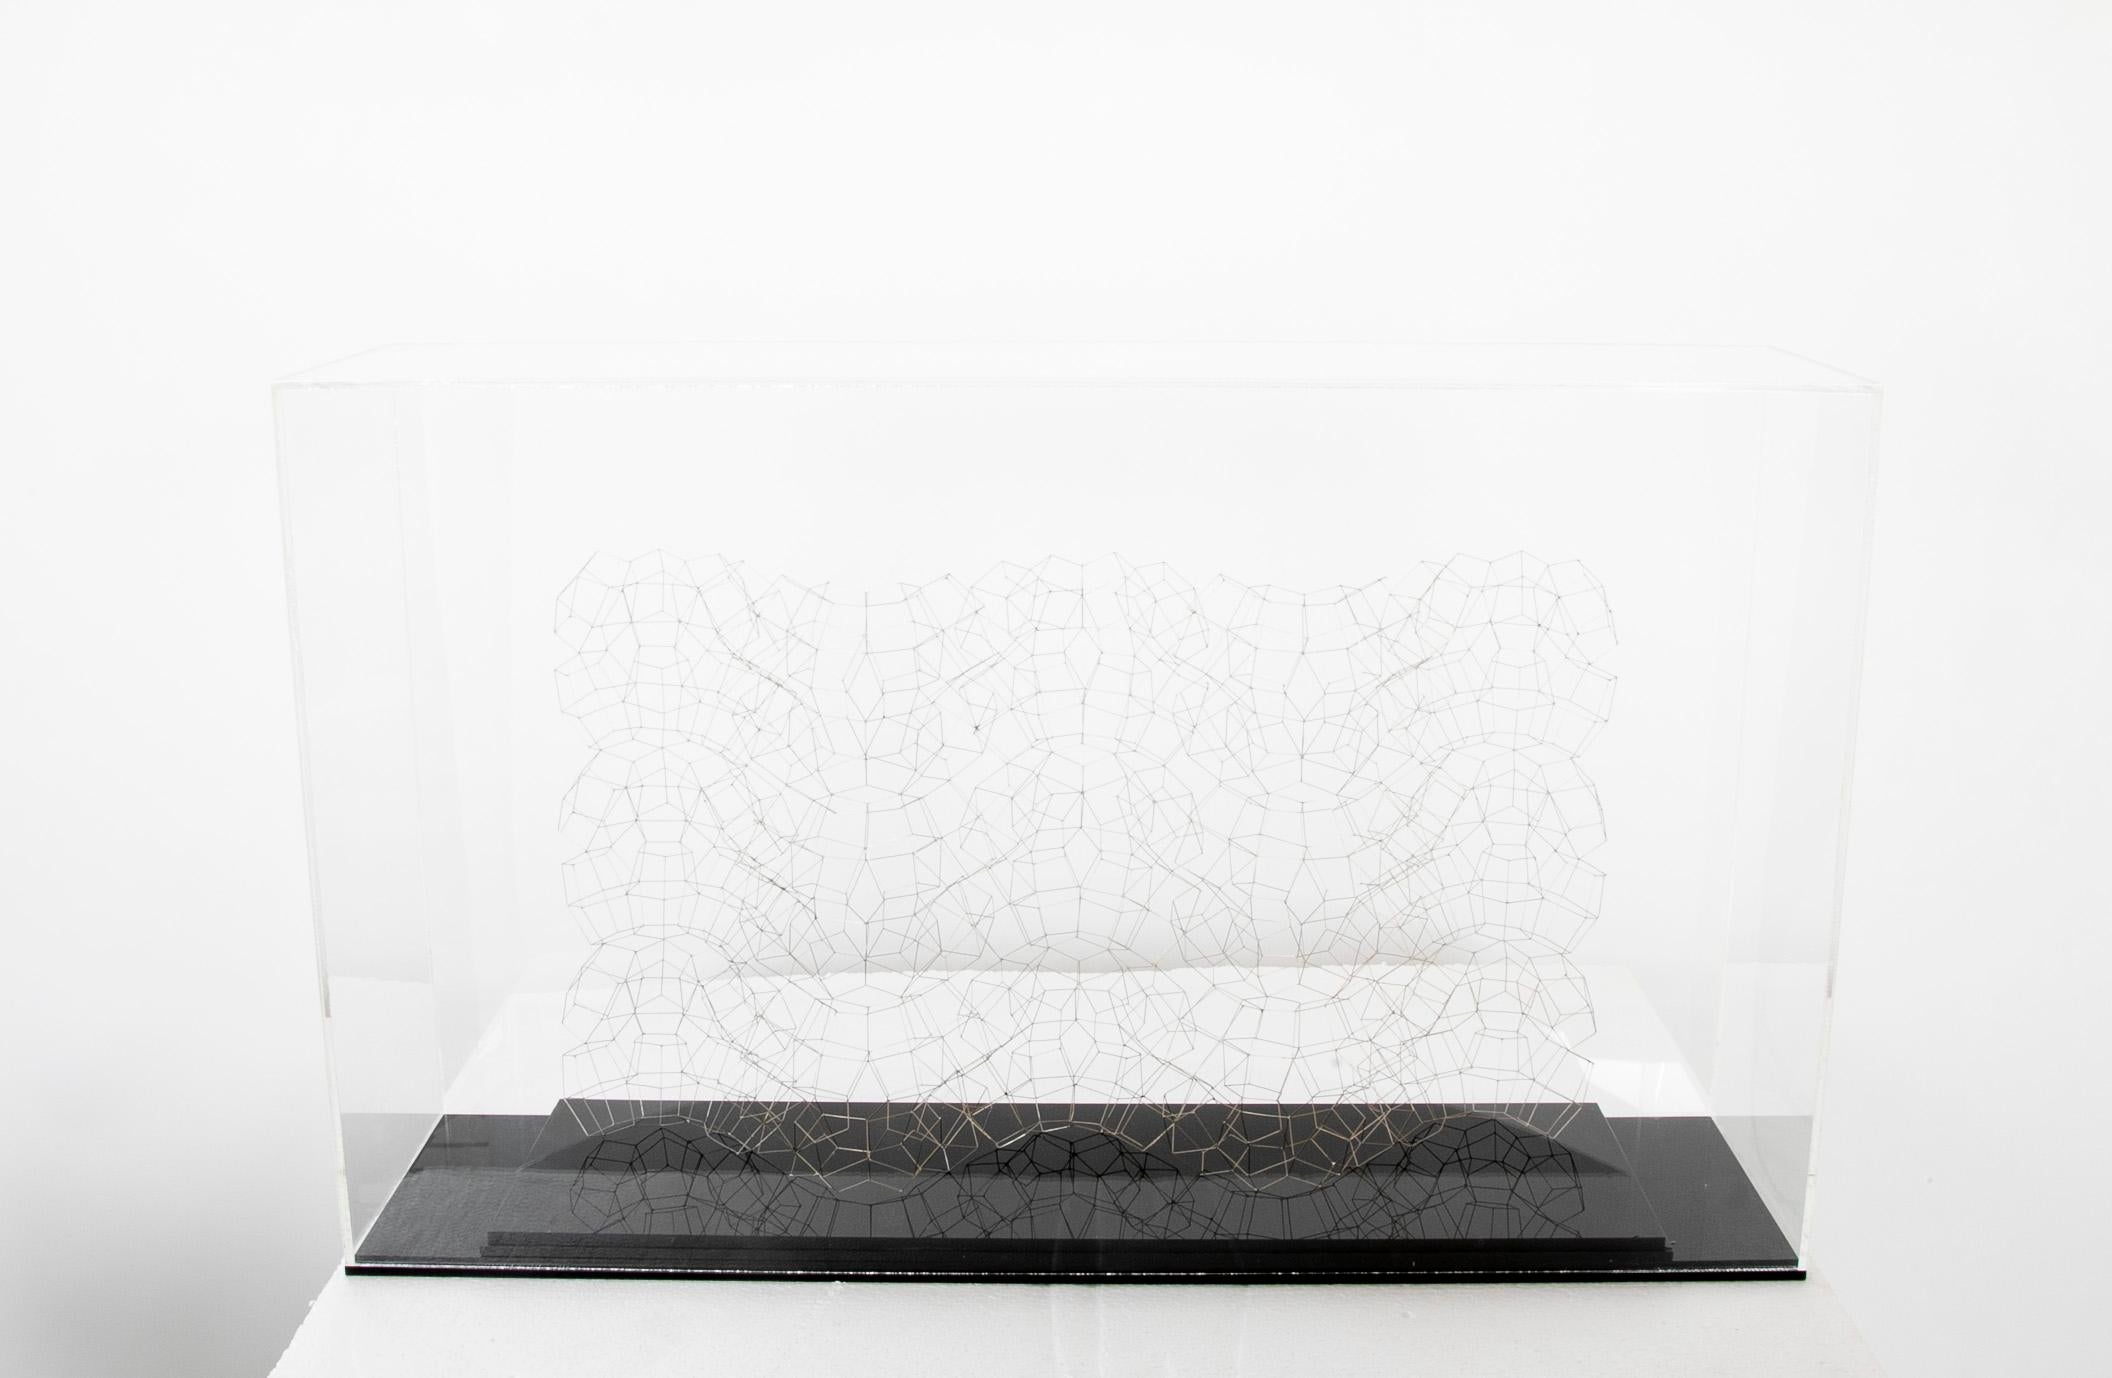 Une sculpture en fil de fer soudé sous vitrine en plexiglas de la sculptrice américaine Marilynn Gelfman-Karp.
Signé et daté. 
Taille de la sculpture - 15